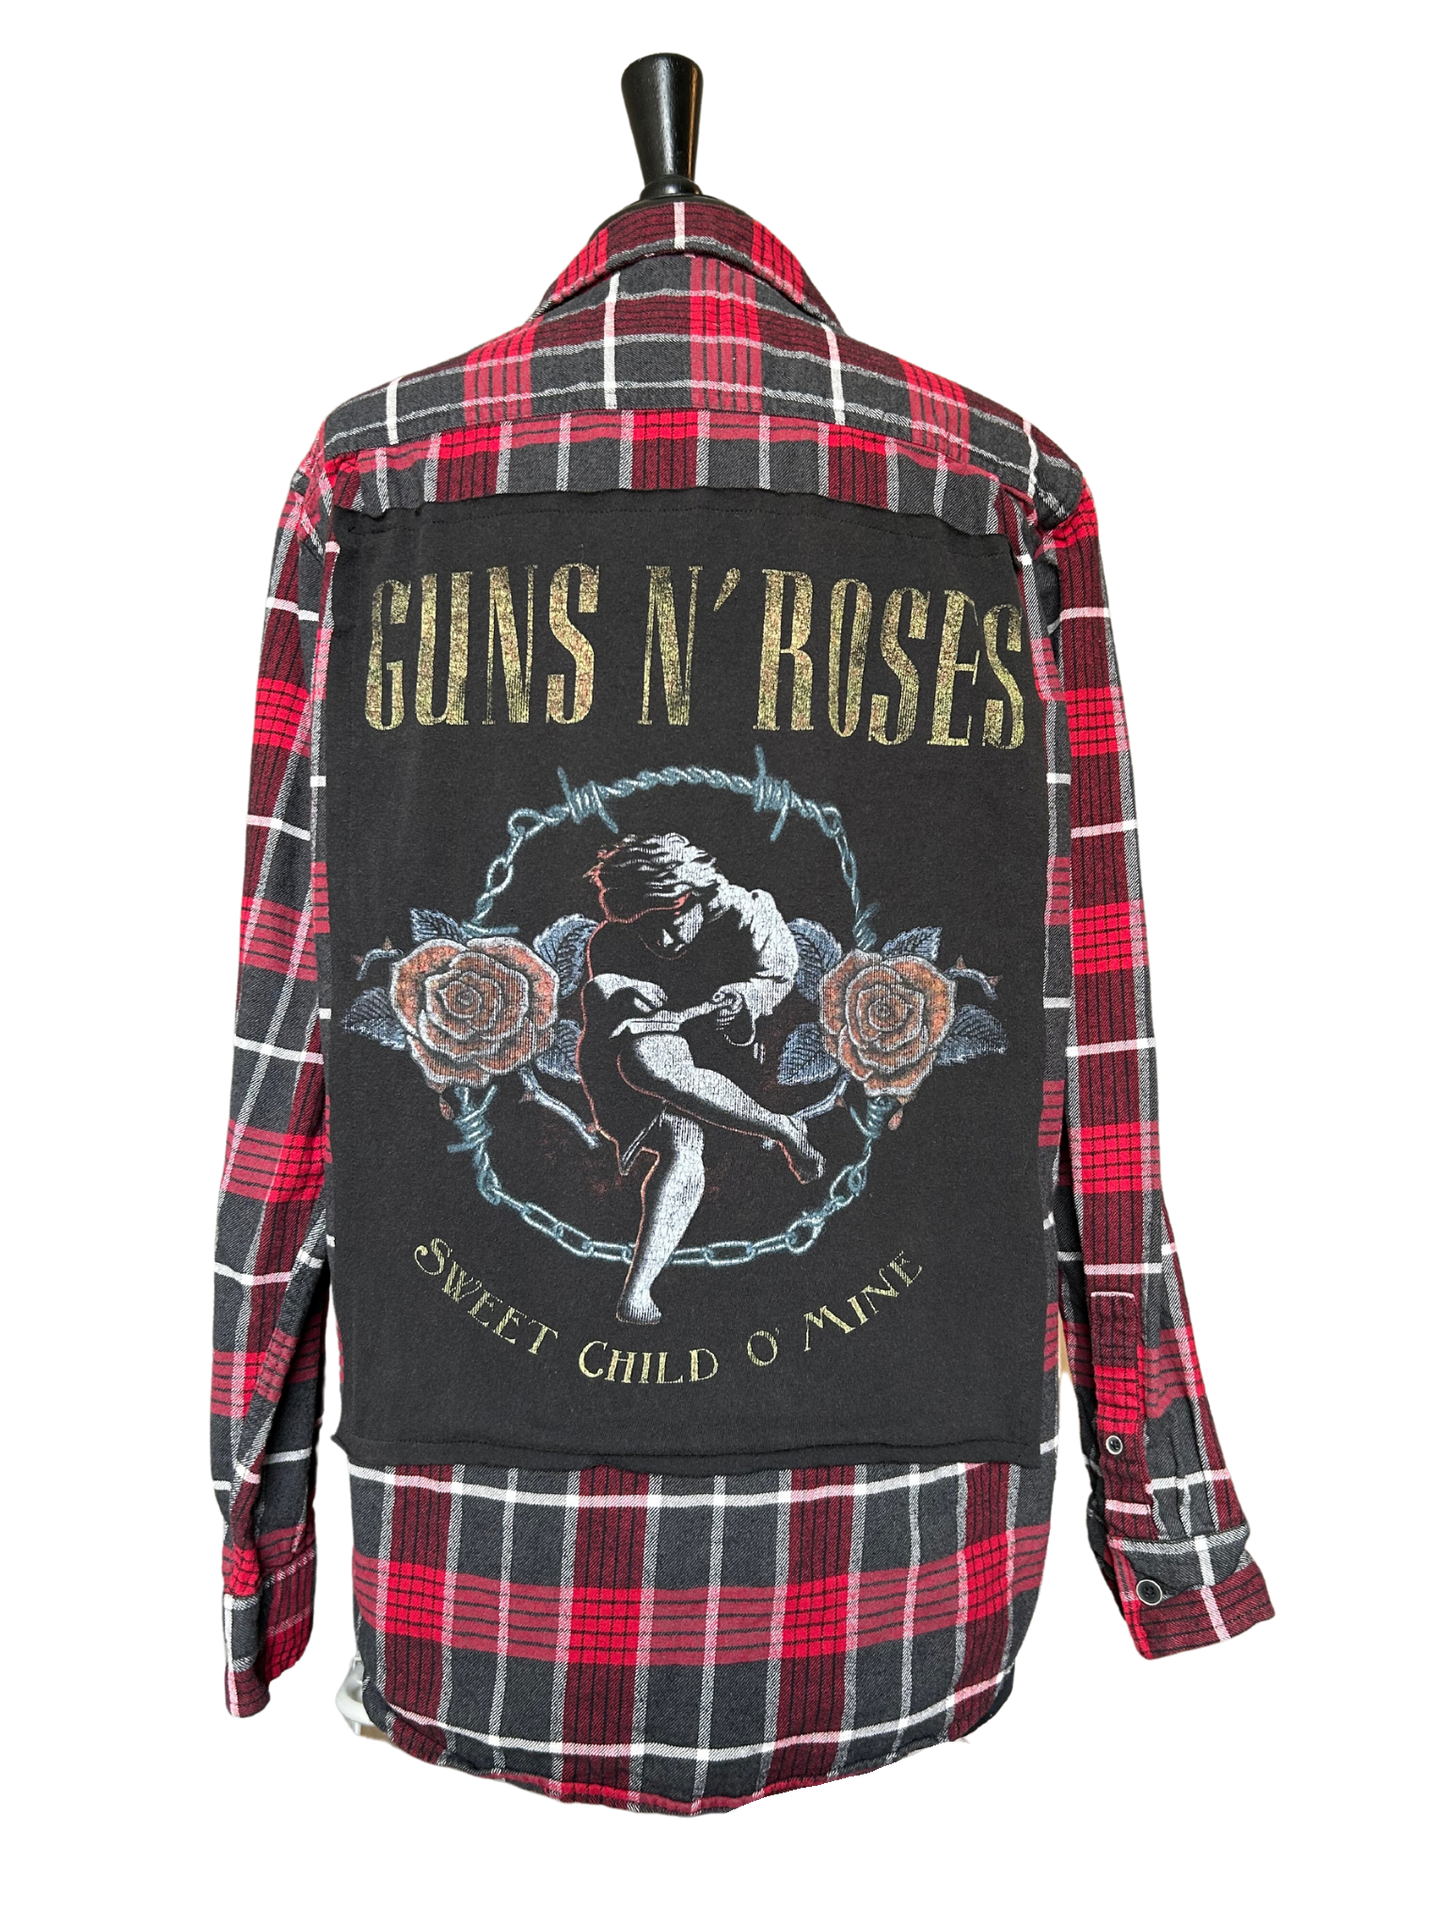 Guns N Roses - Medium